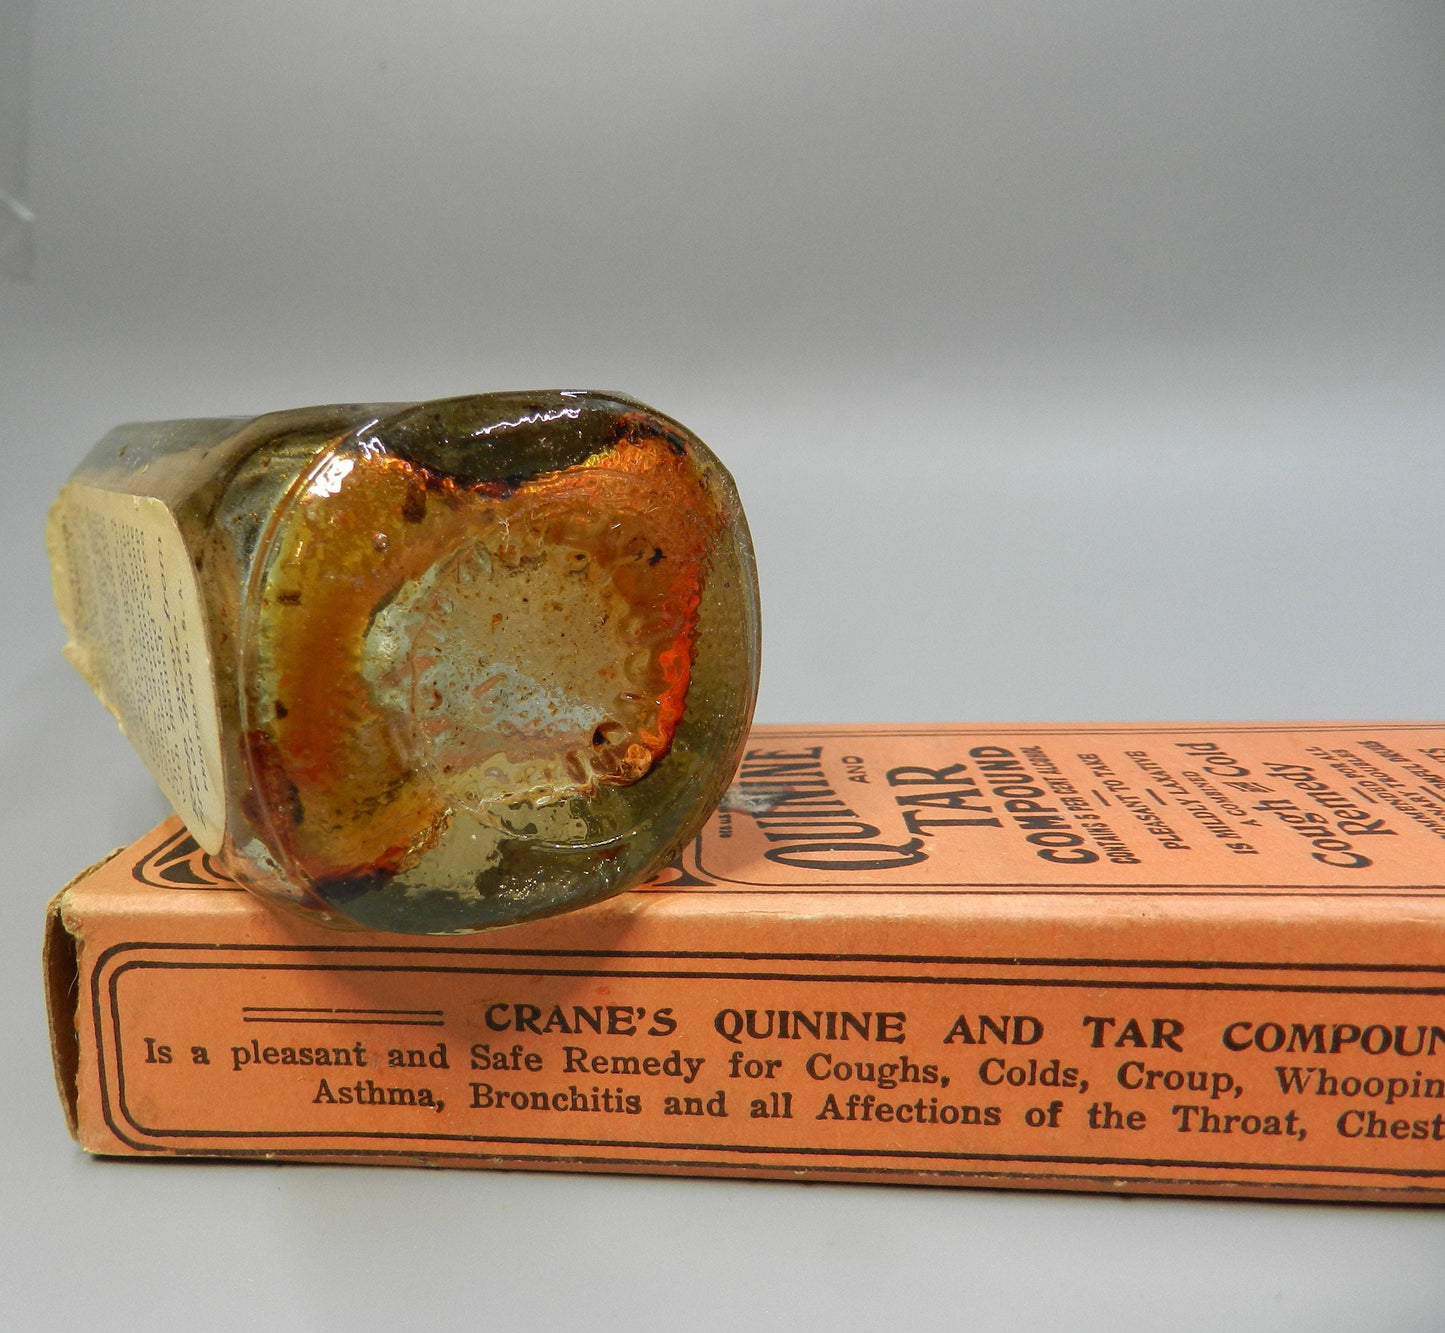 2 Authentic Vintage Medicine  Bottles - Quack Medicine Cure - Liniment - Heil-oel - Crane's Quinine Tar Compound